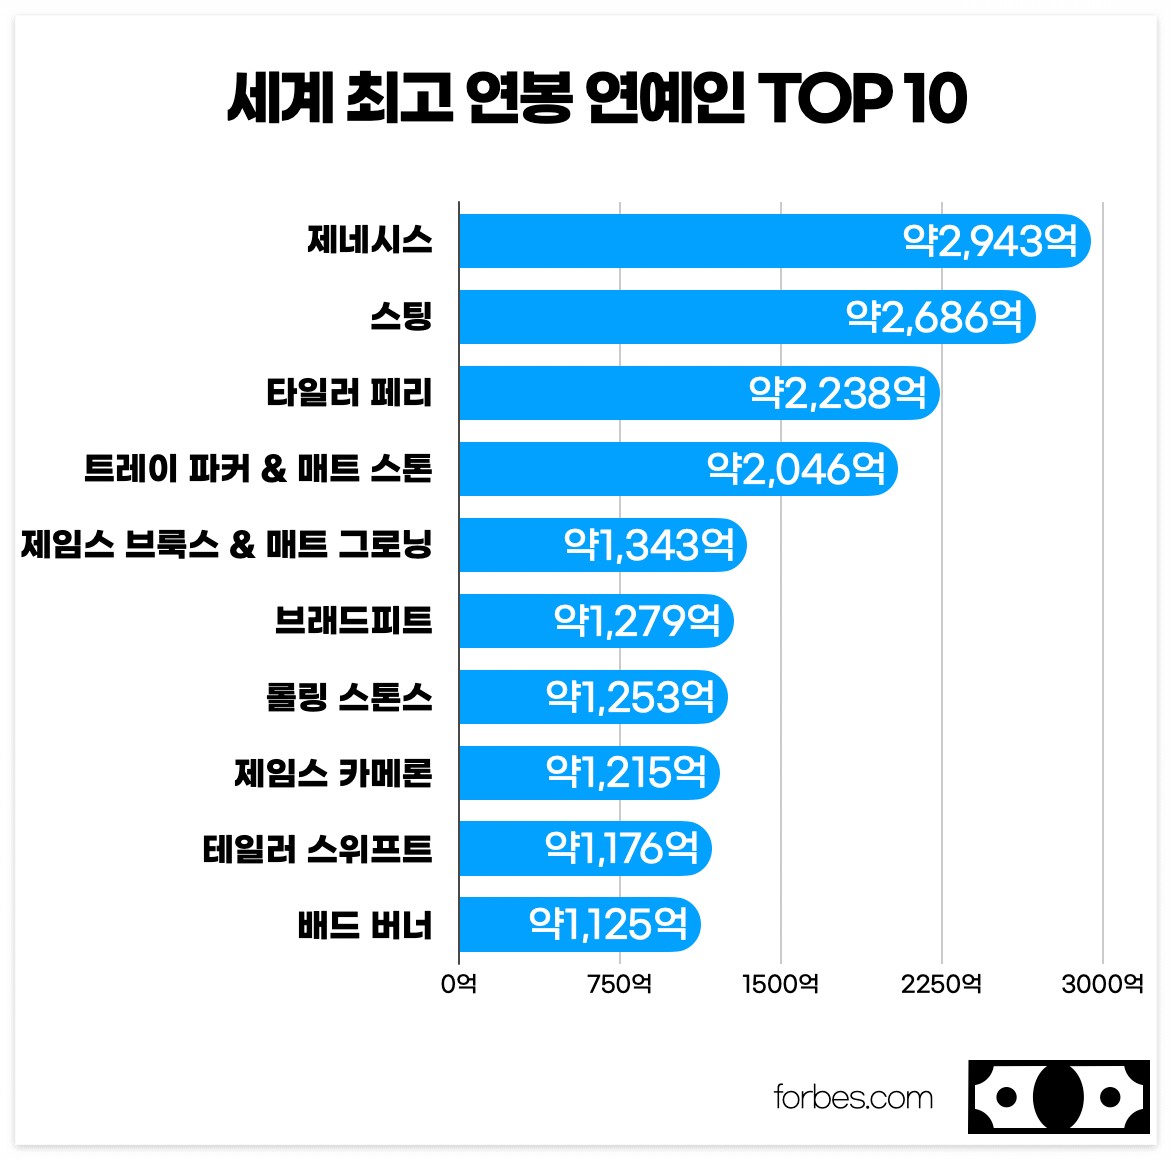 포브스 세계 최고 연봉 연예인 TOP 10